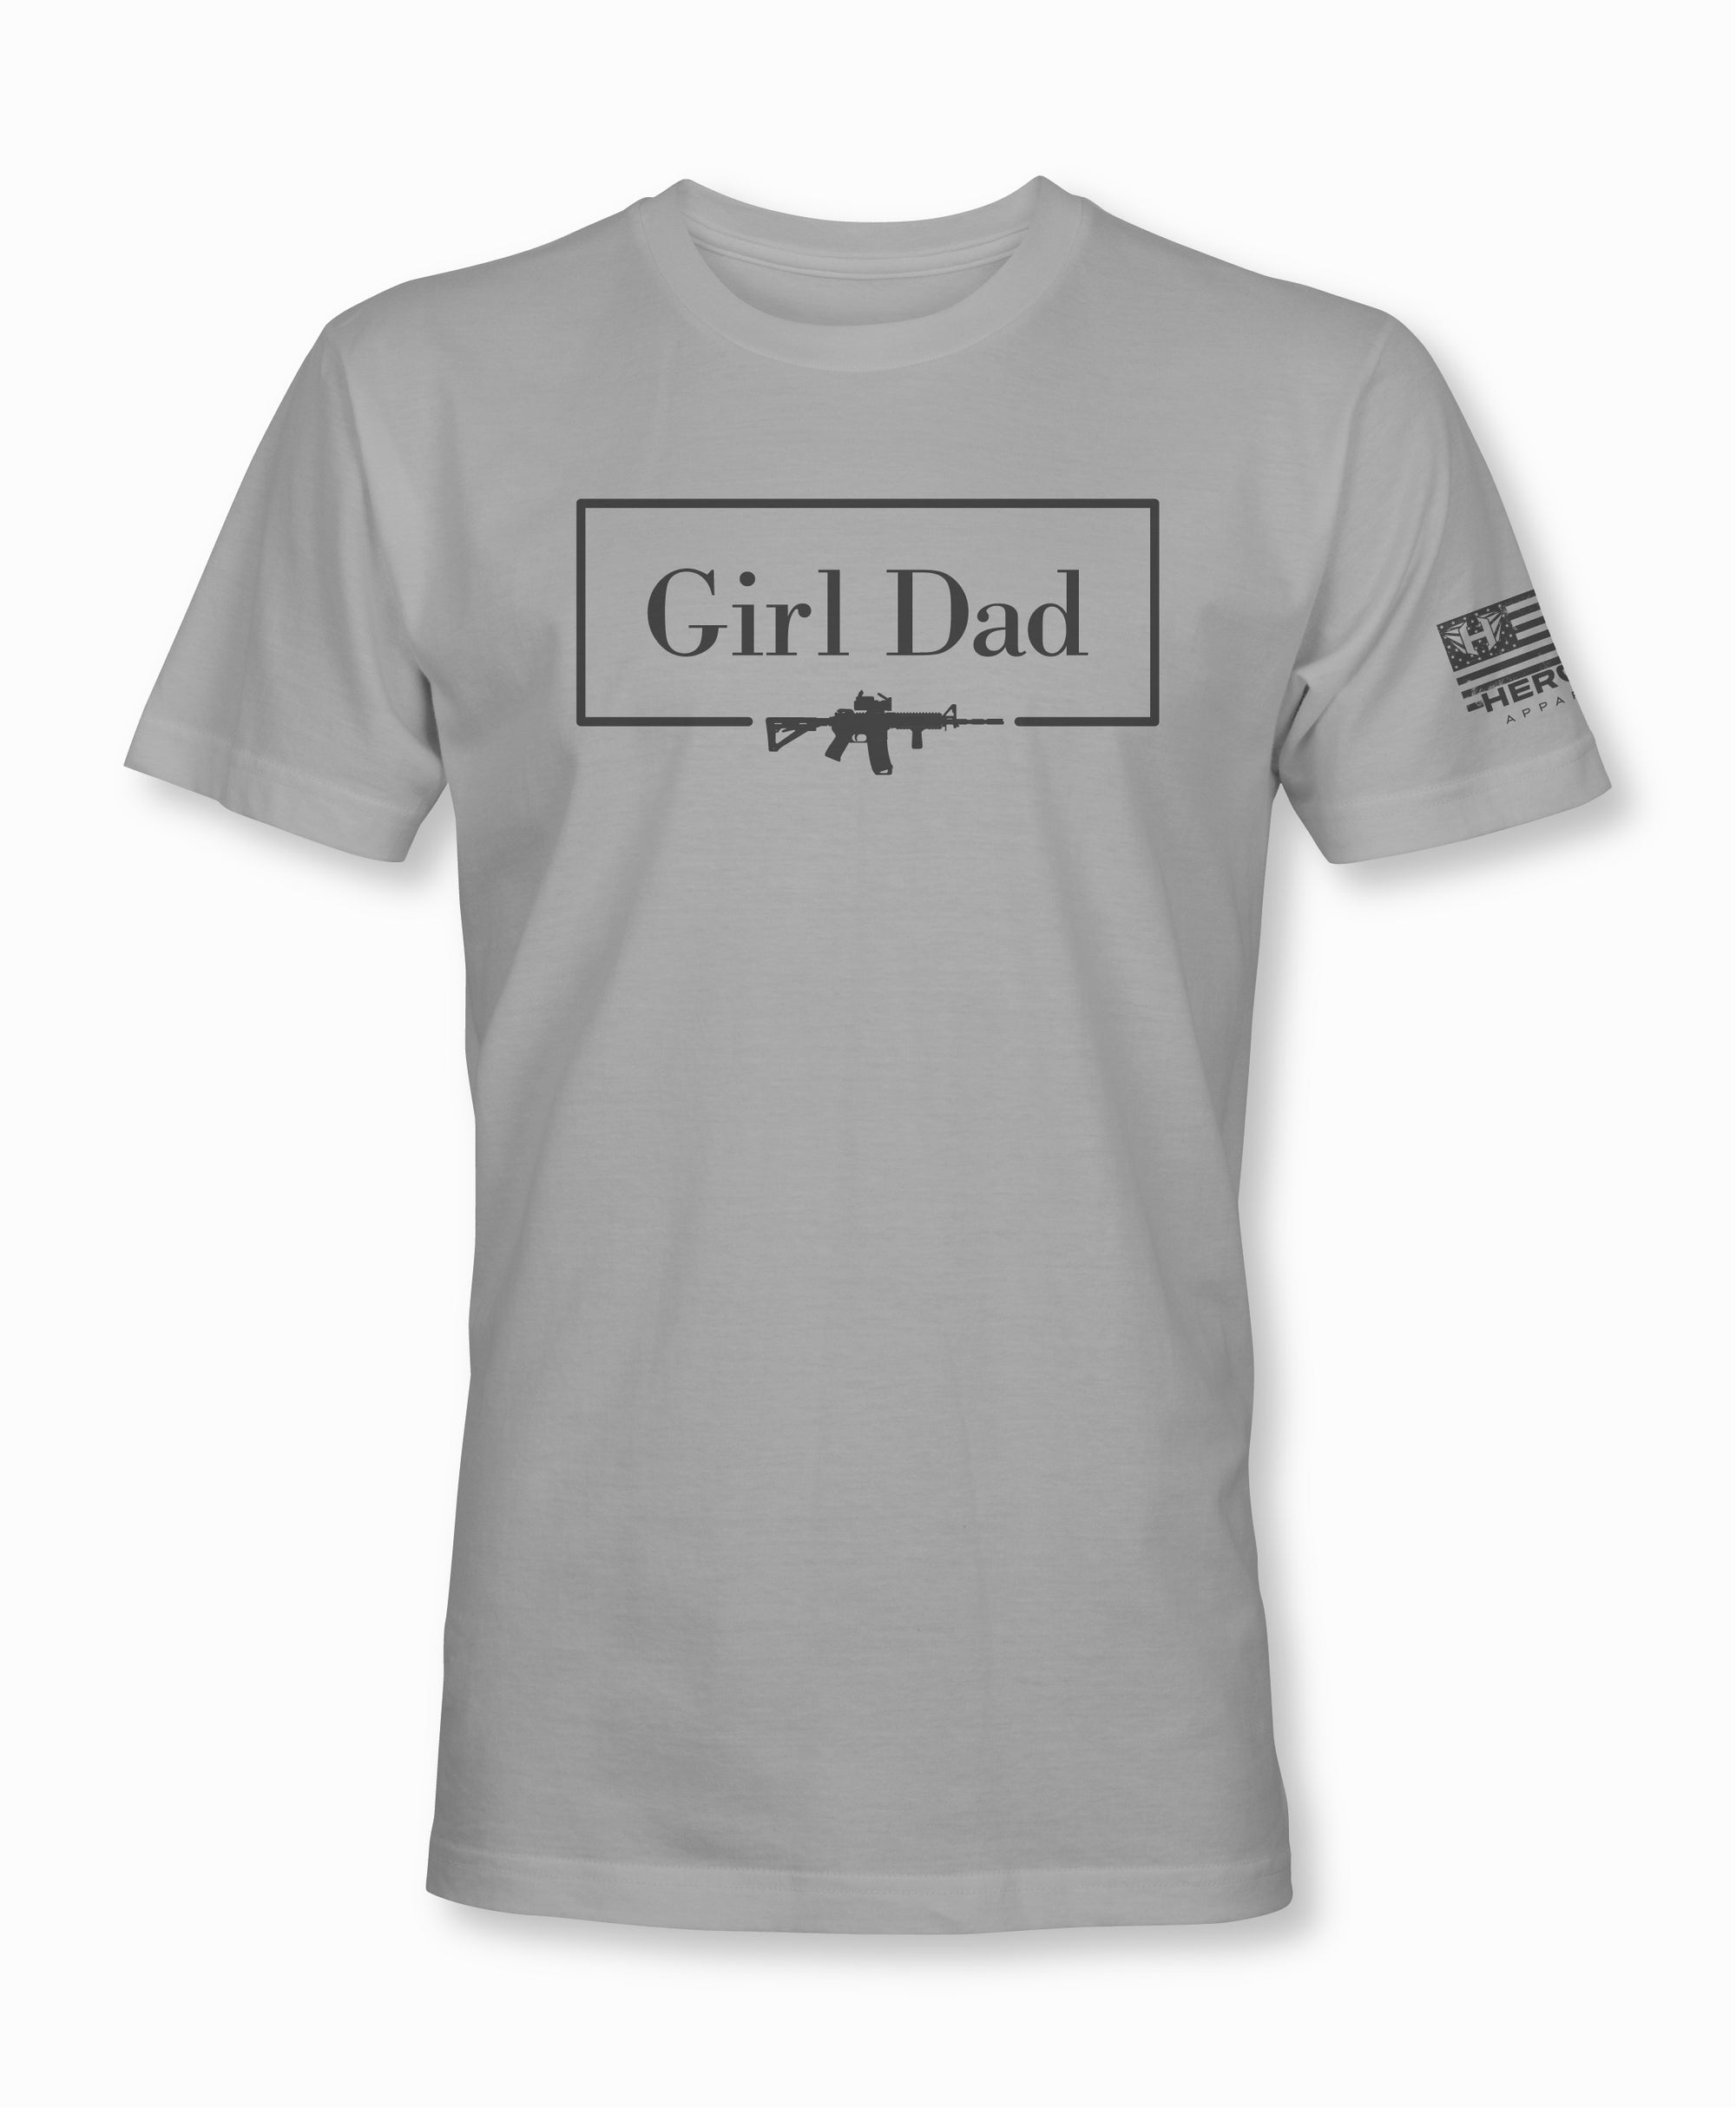 Girl Dad 2.0 Tactical Shirt